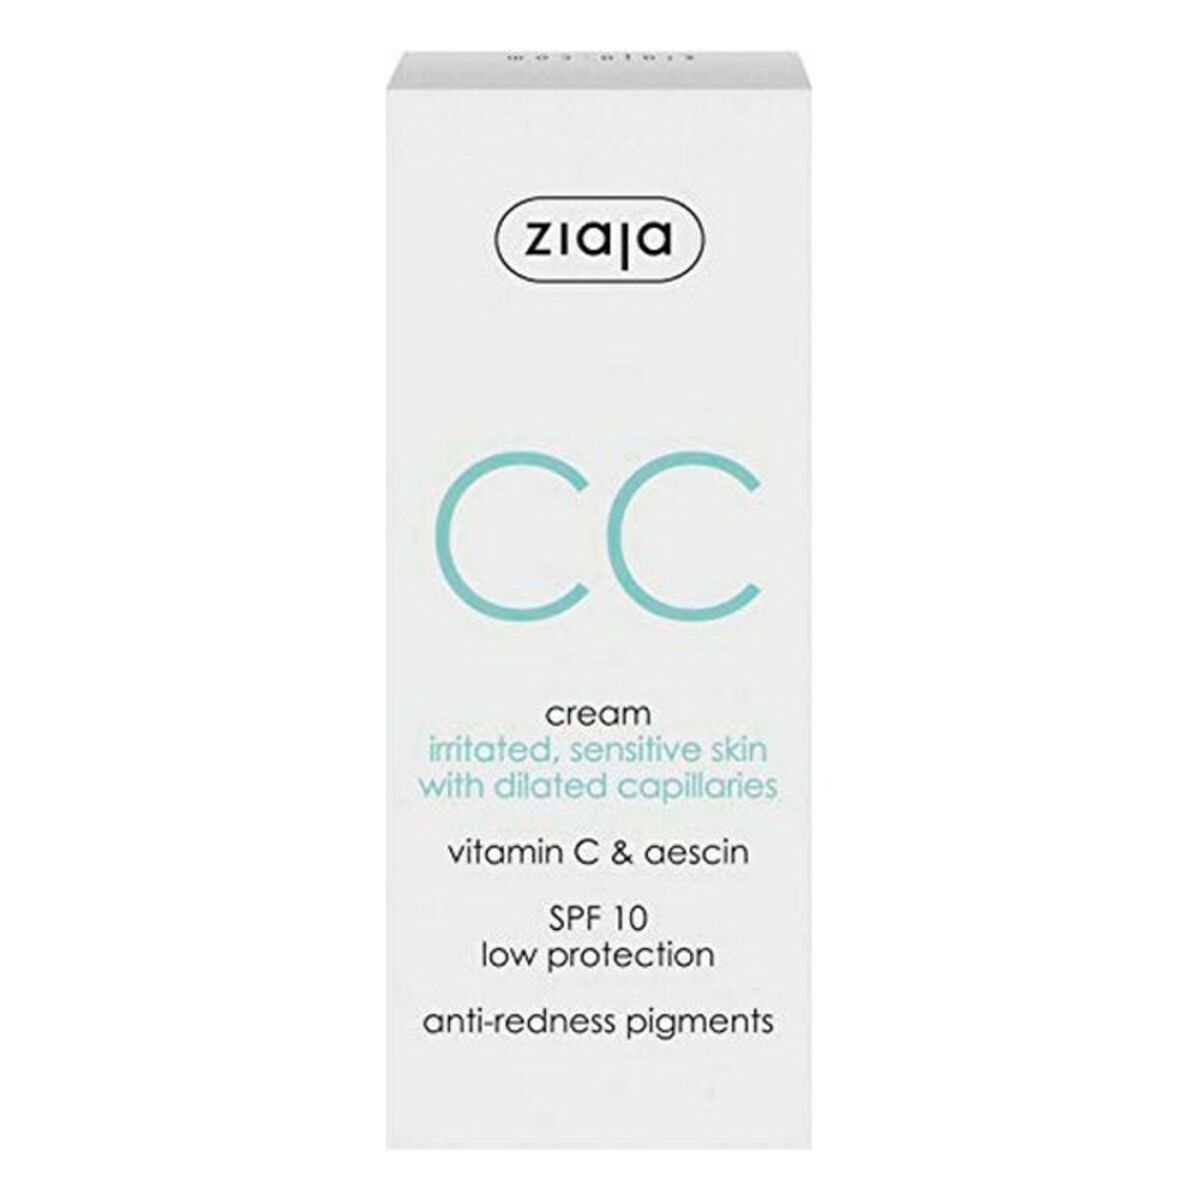 CC Cream Ziaja Cc Cream Spf 10 50 ml